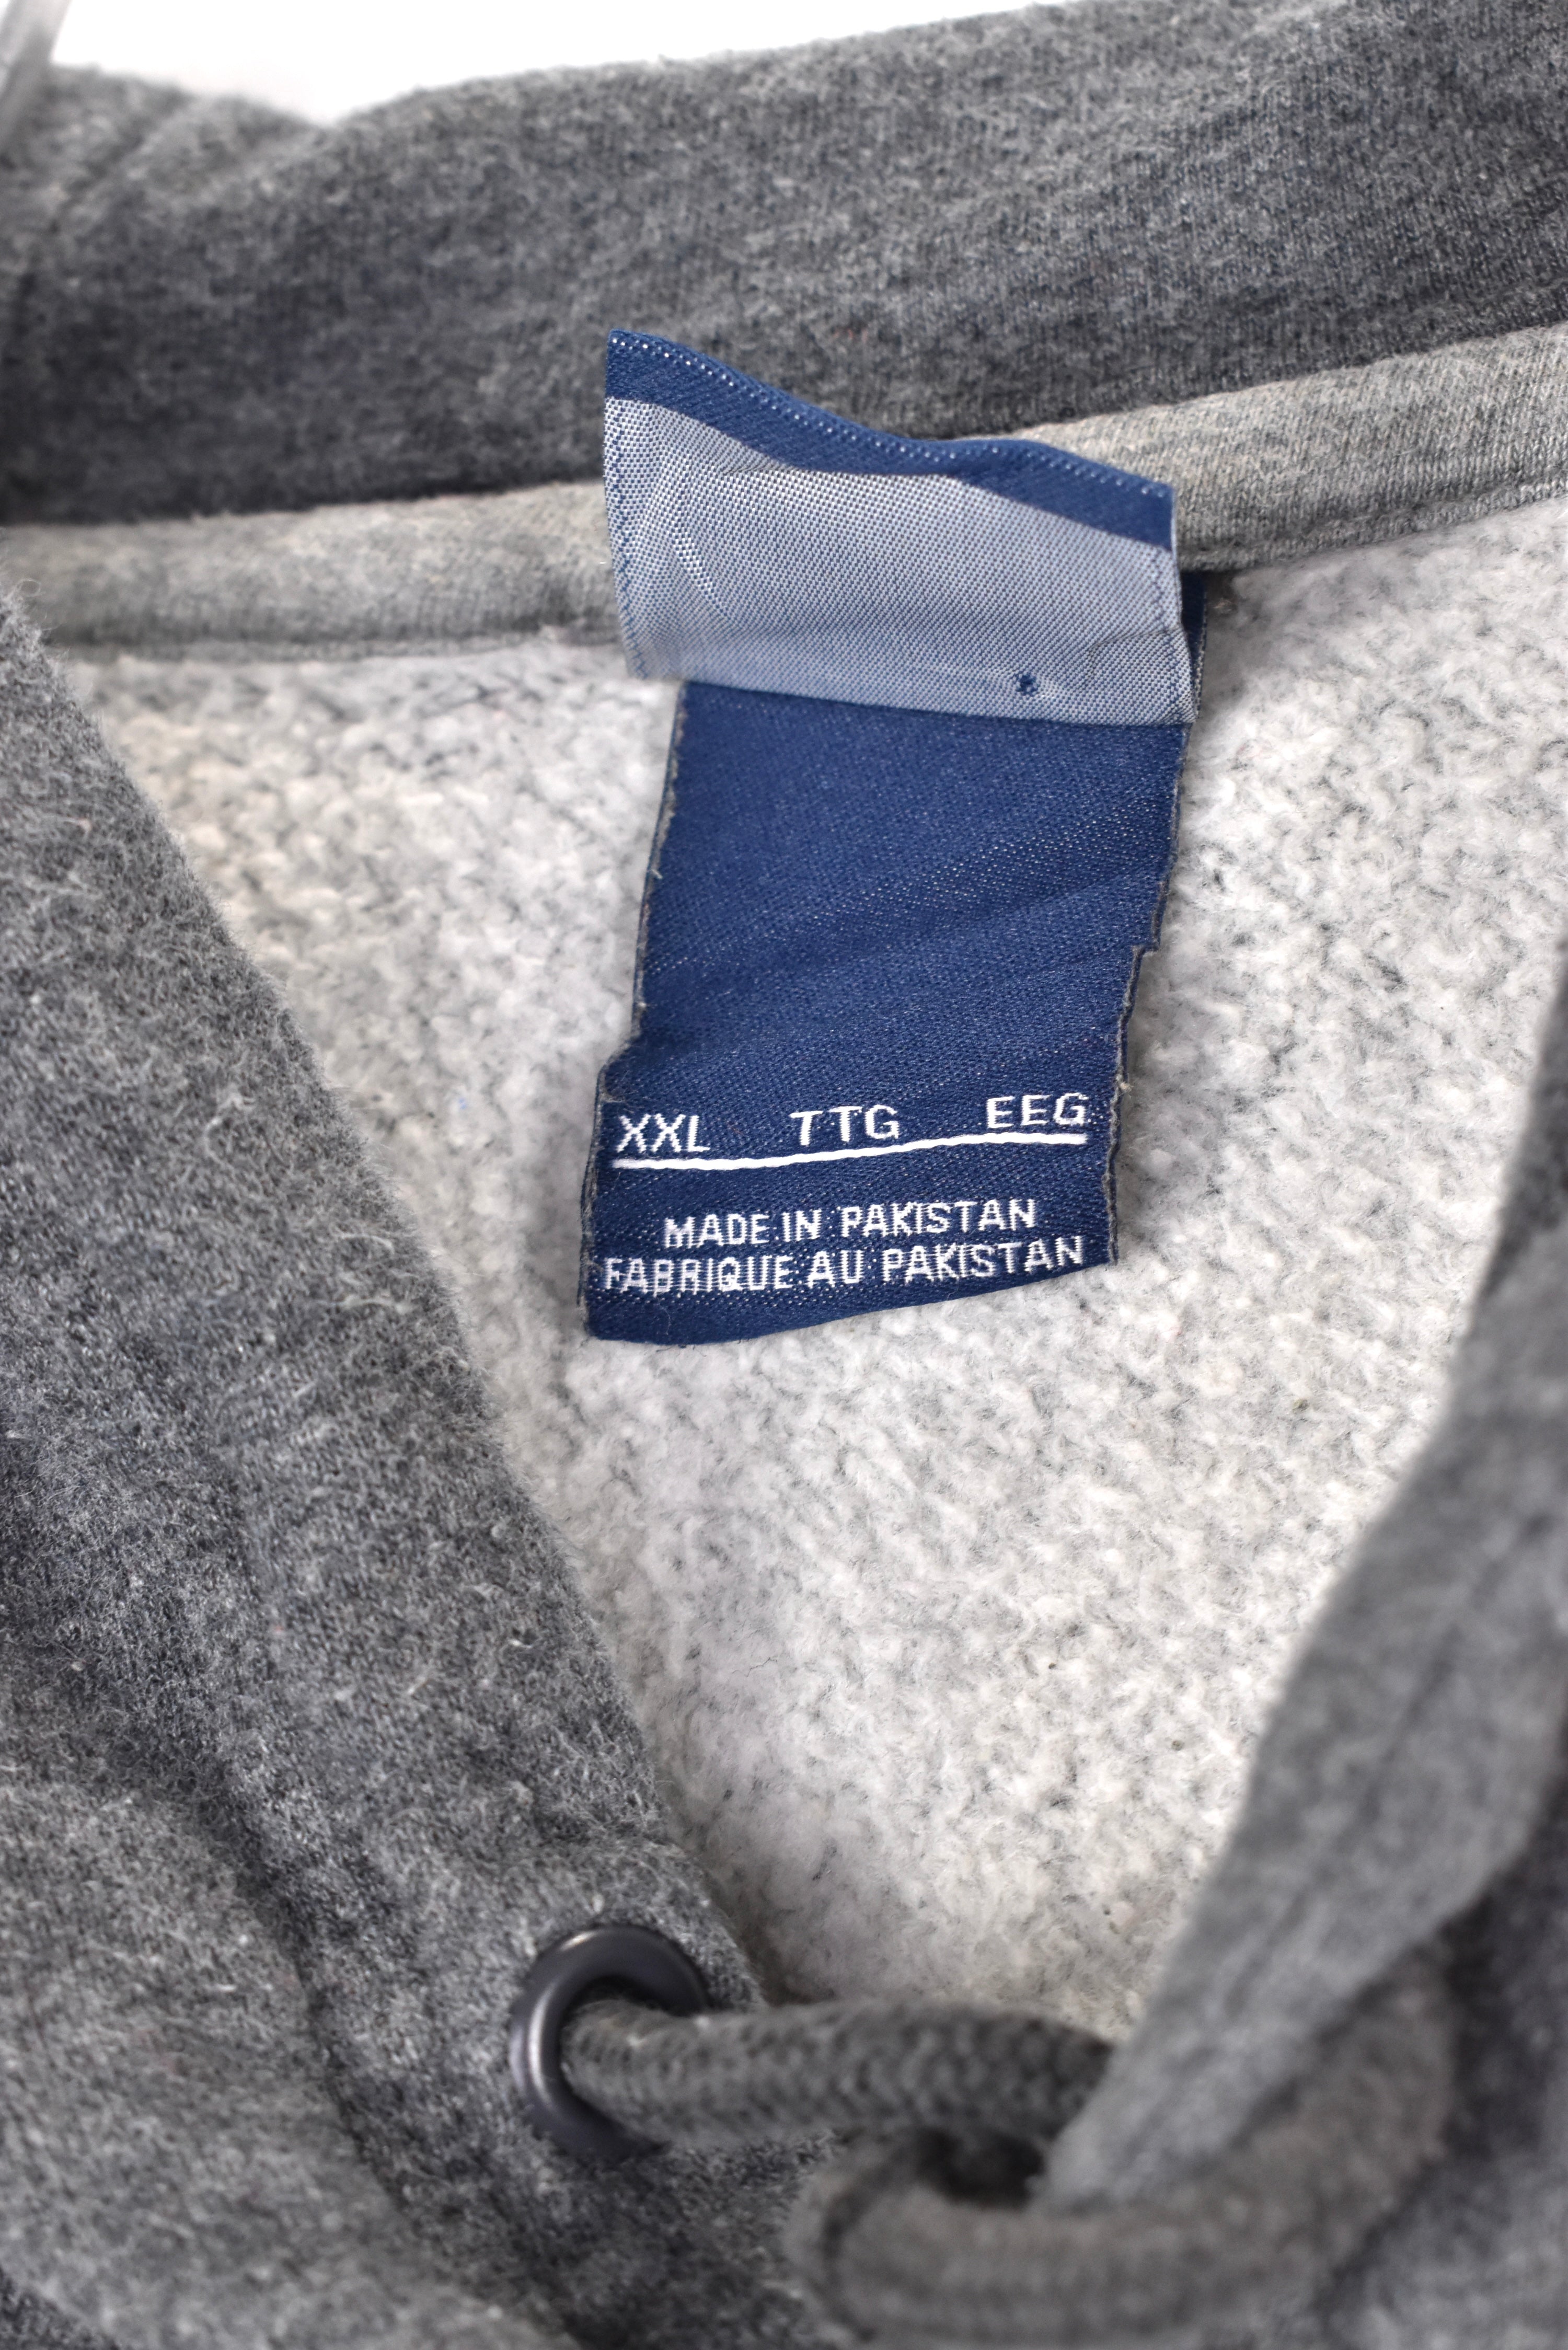 Vintage Nike hoodie, grey embroidered sweatshirt - AU XXL NIKE